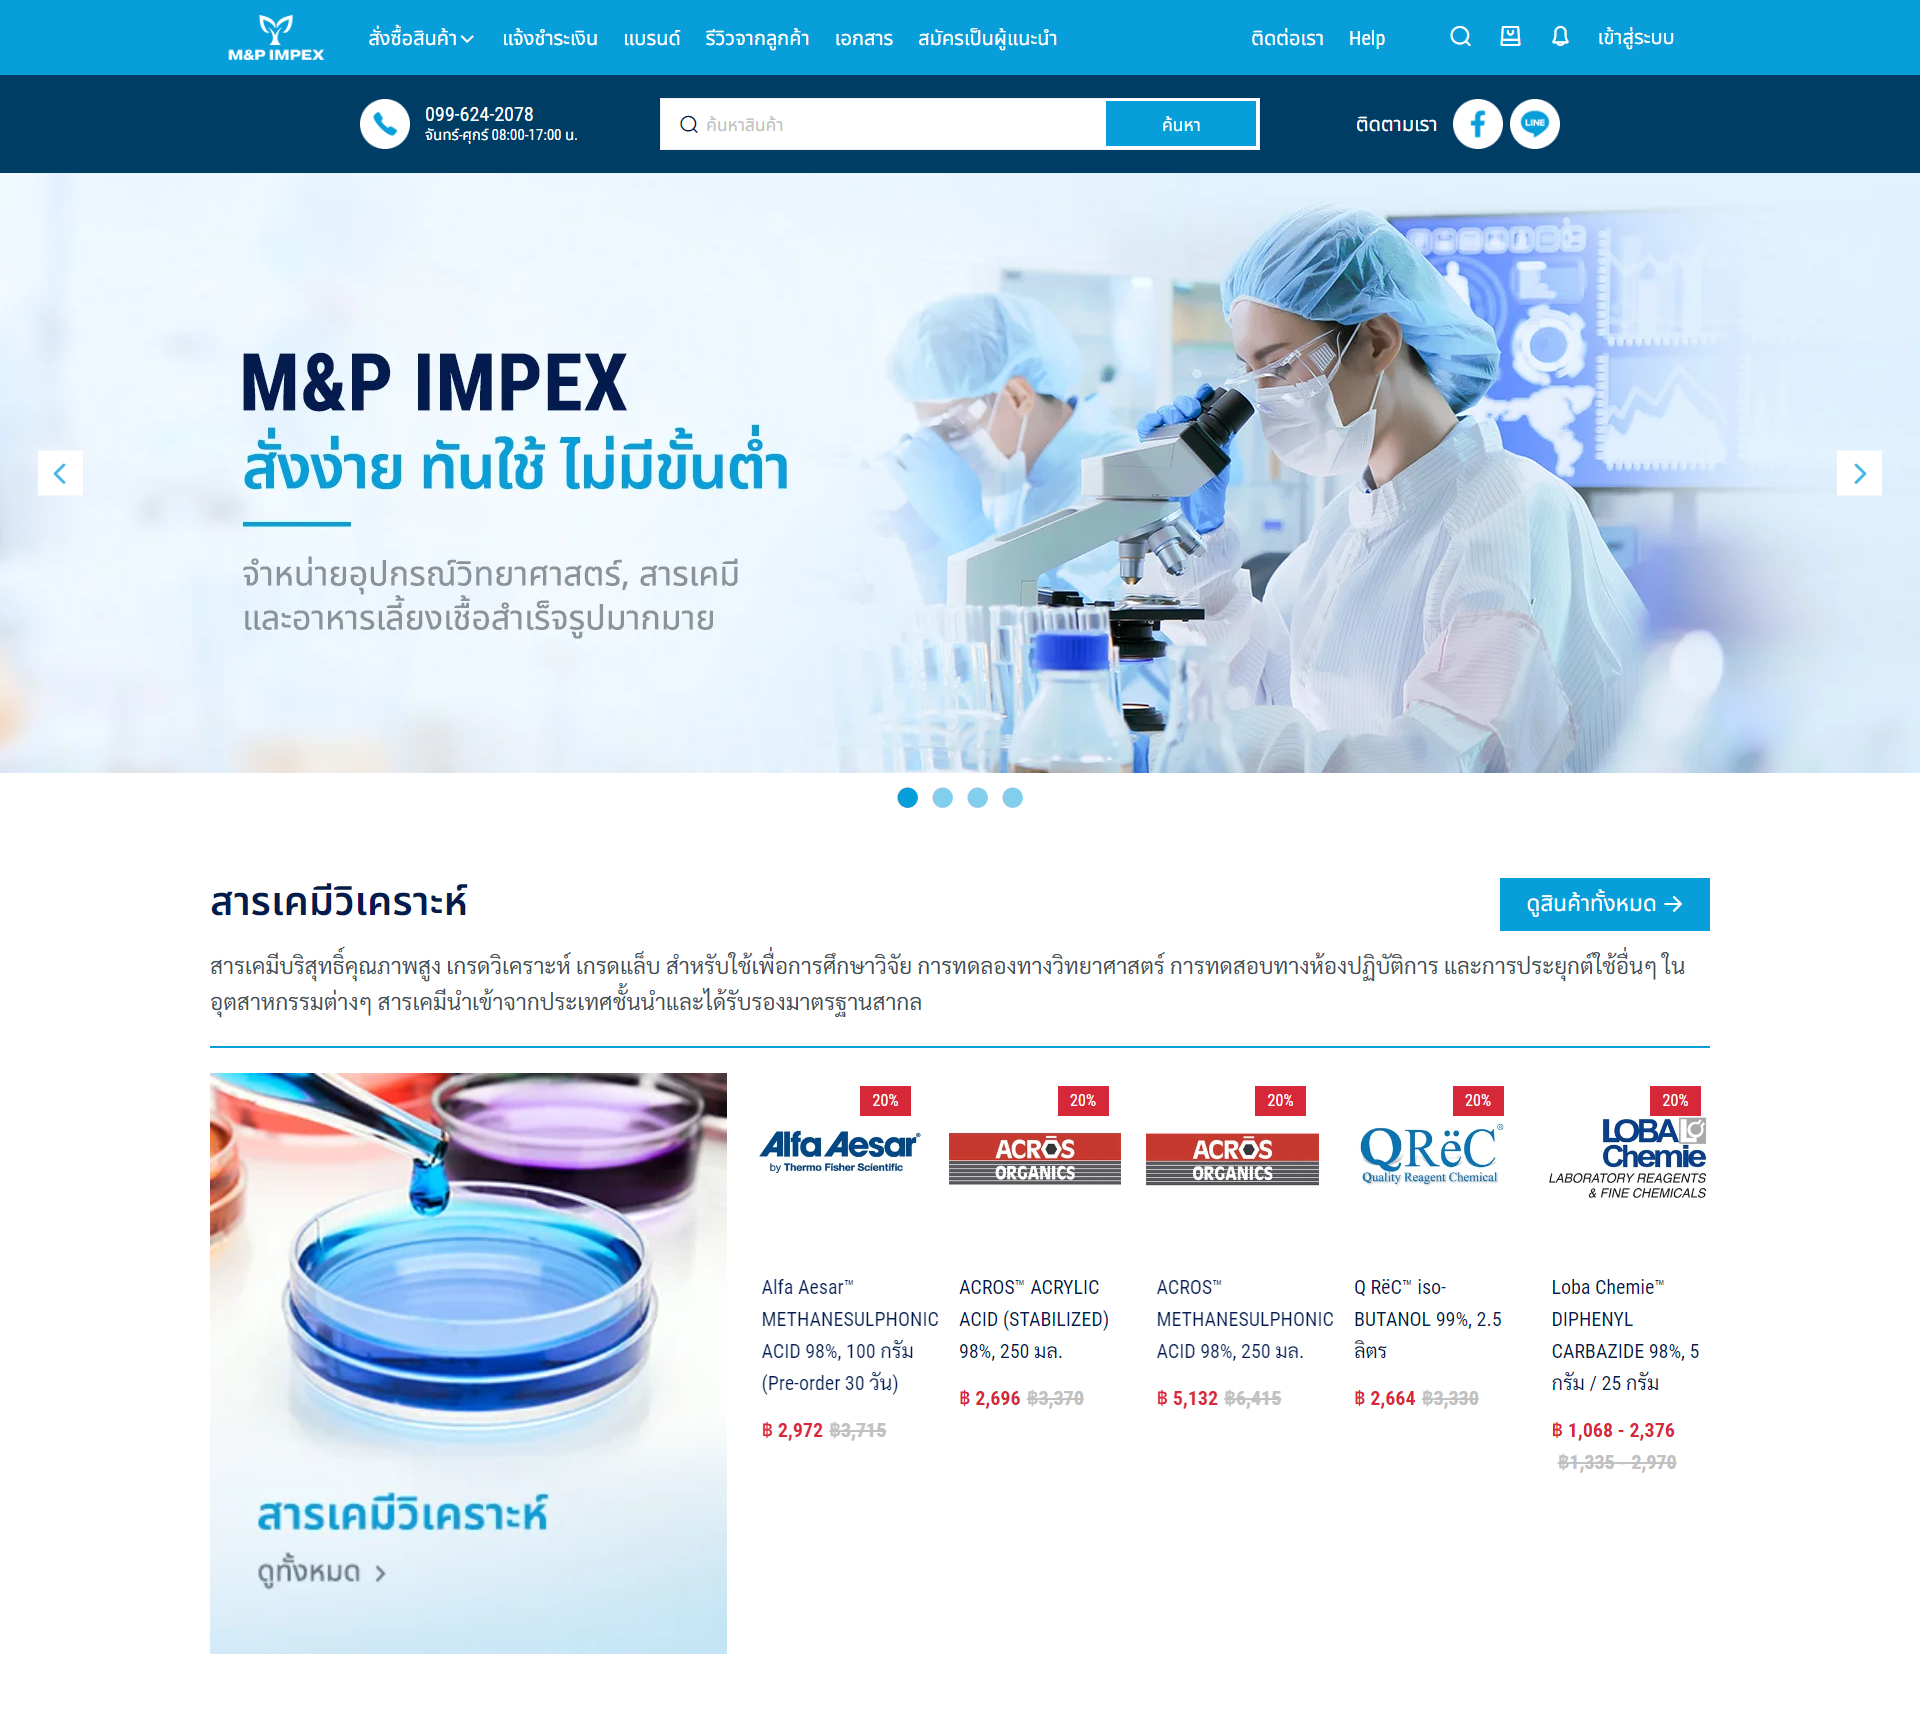 M&P IMPEX website